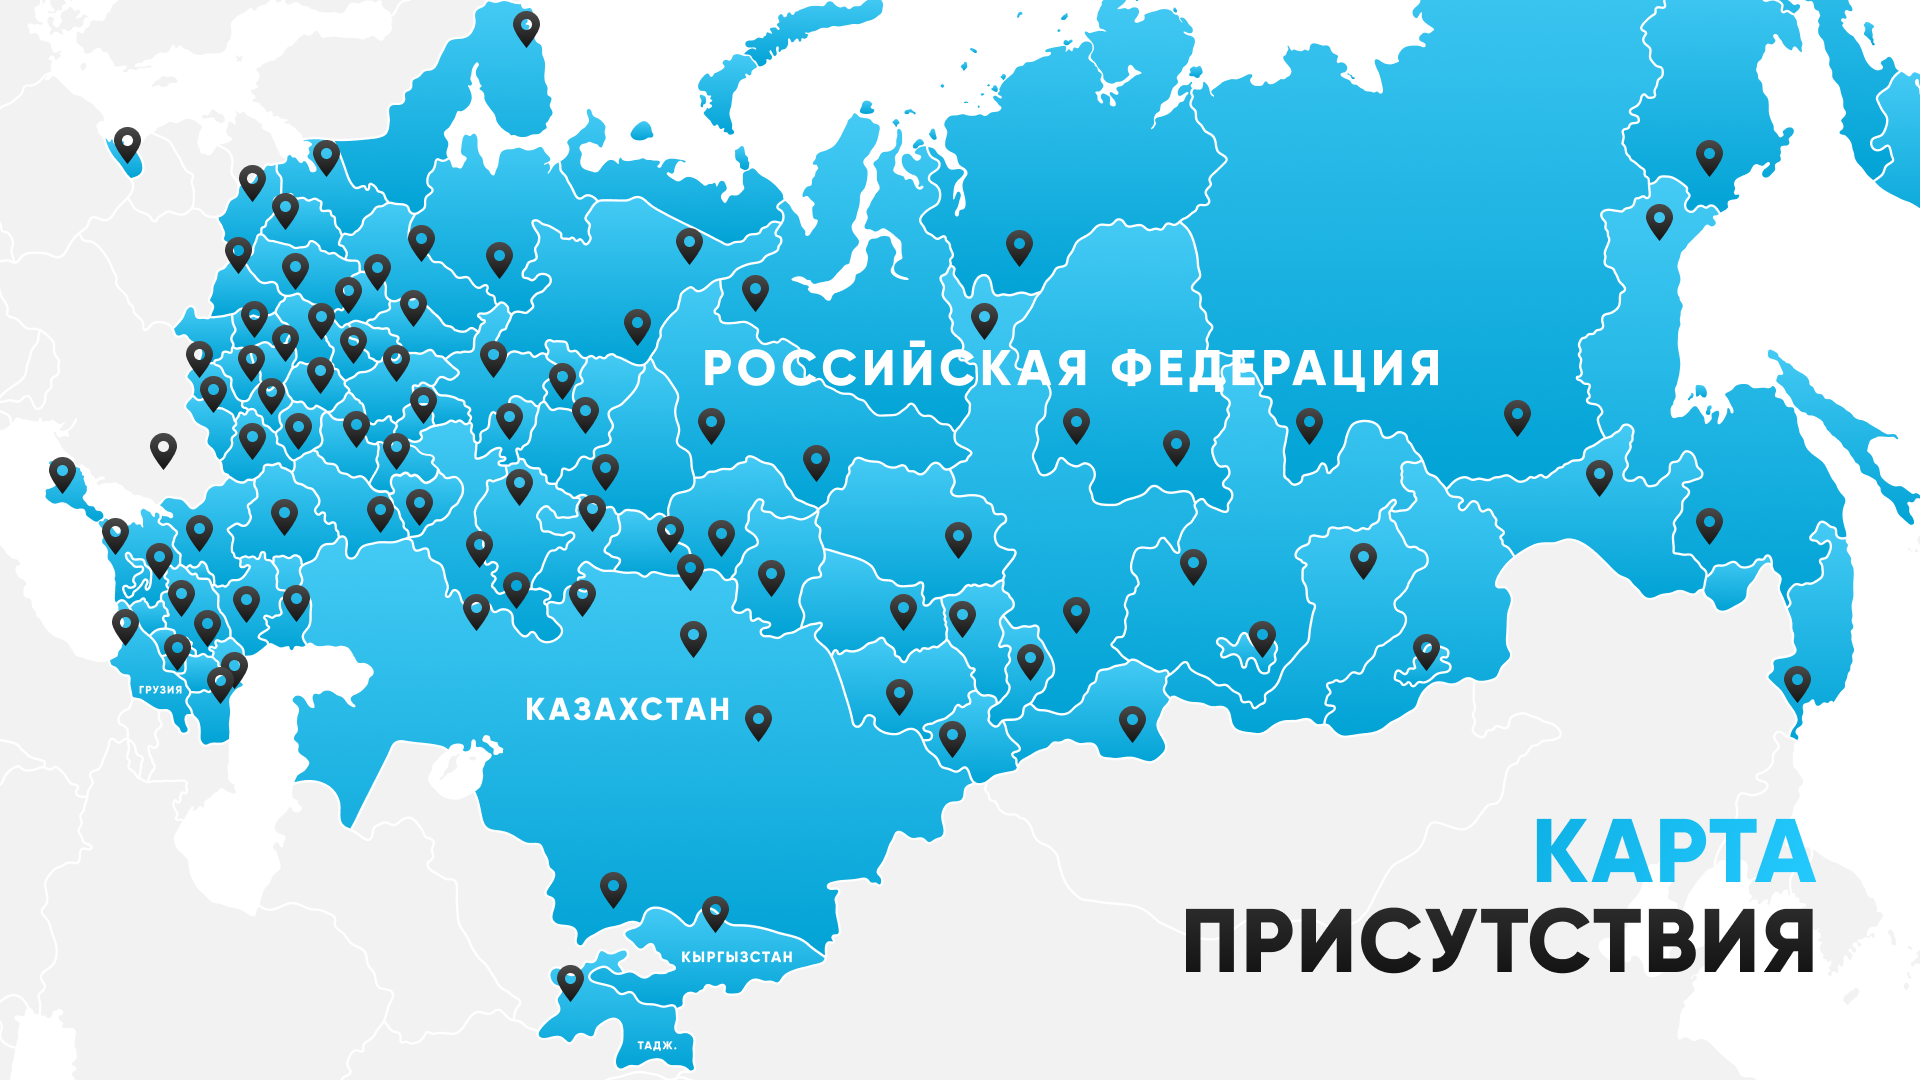 «ВИЗИРЬ КОМПАНИ» сеть магазинов по России и СНГ